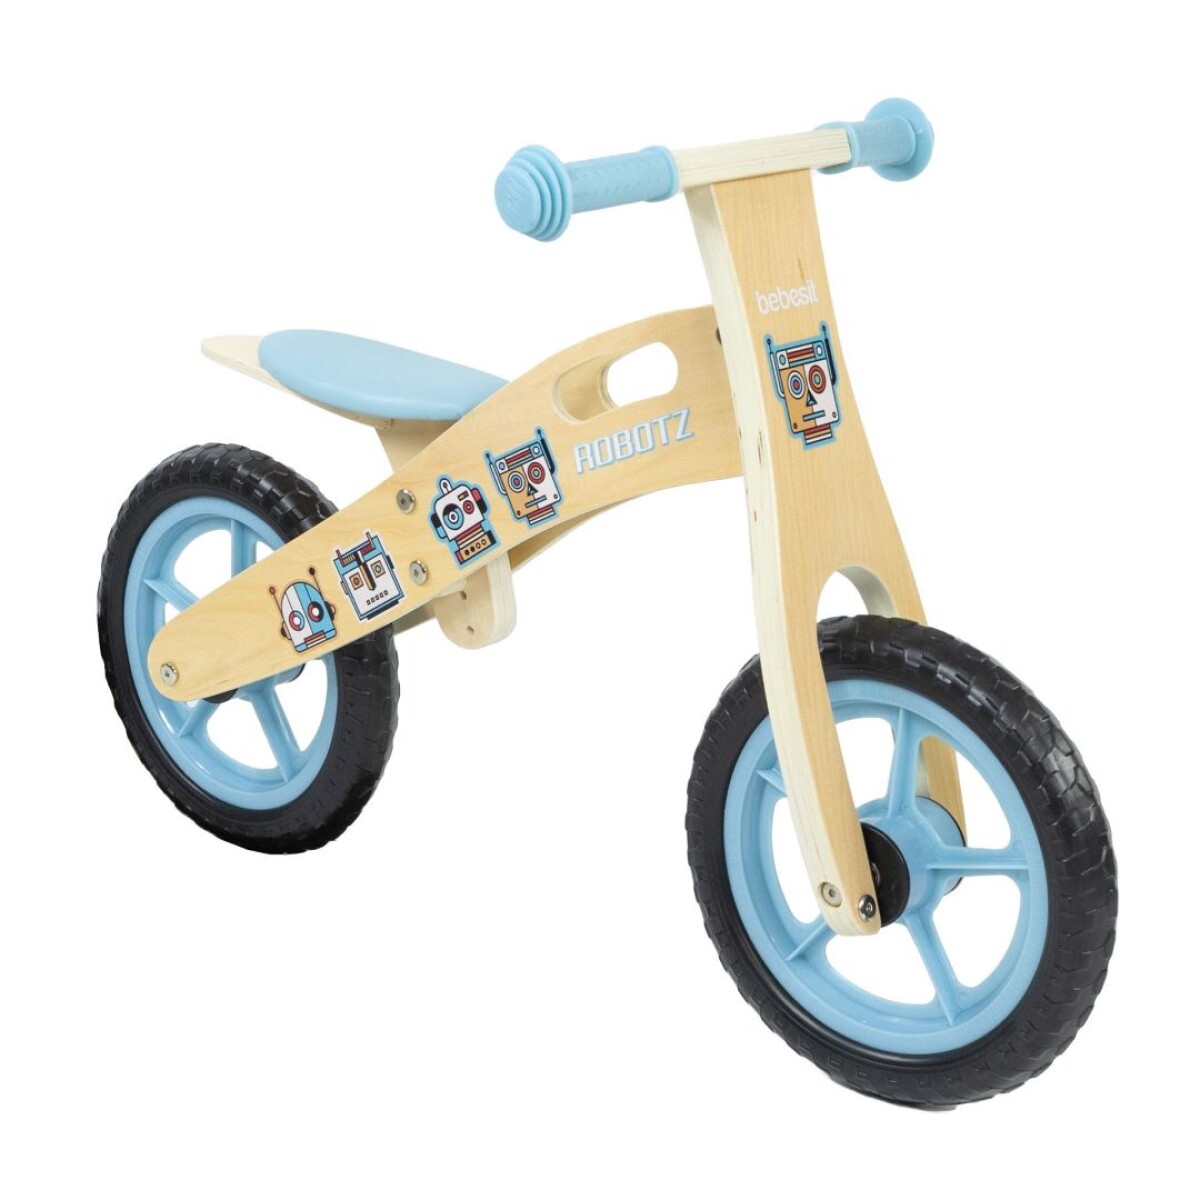 Bicicleta de Balance MyBike Robotz Bebesit 